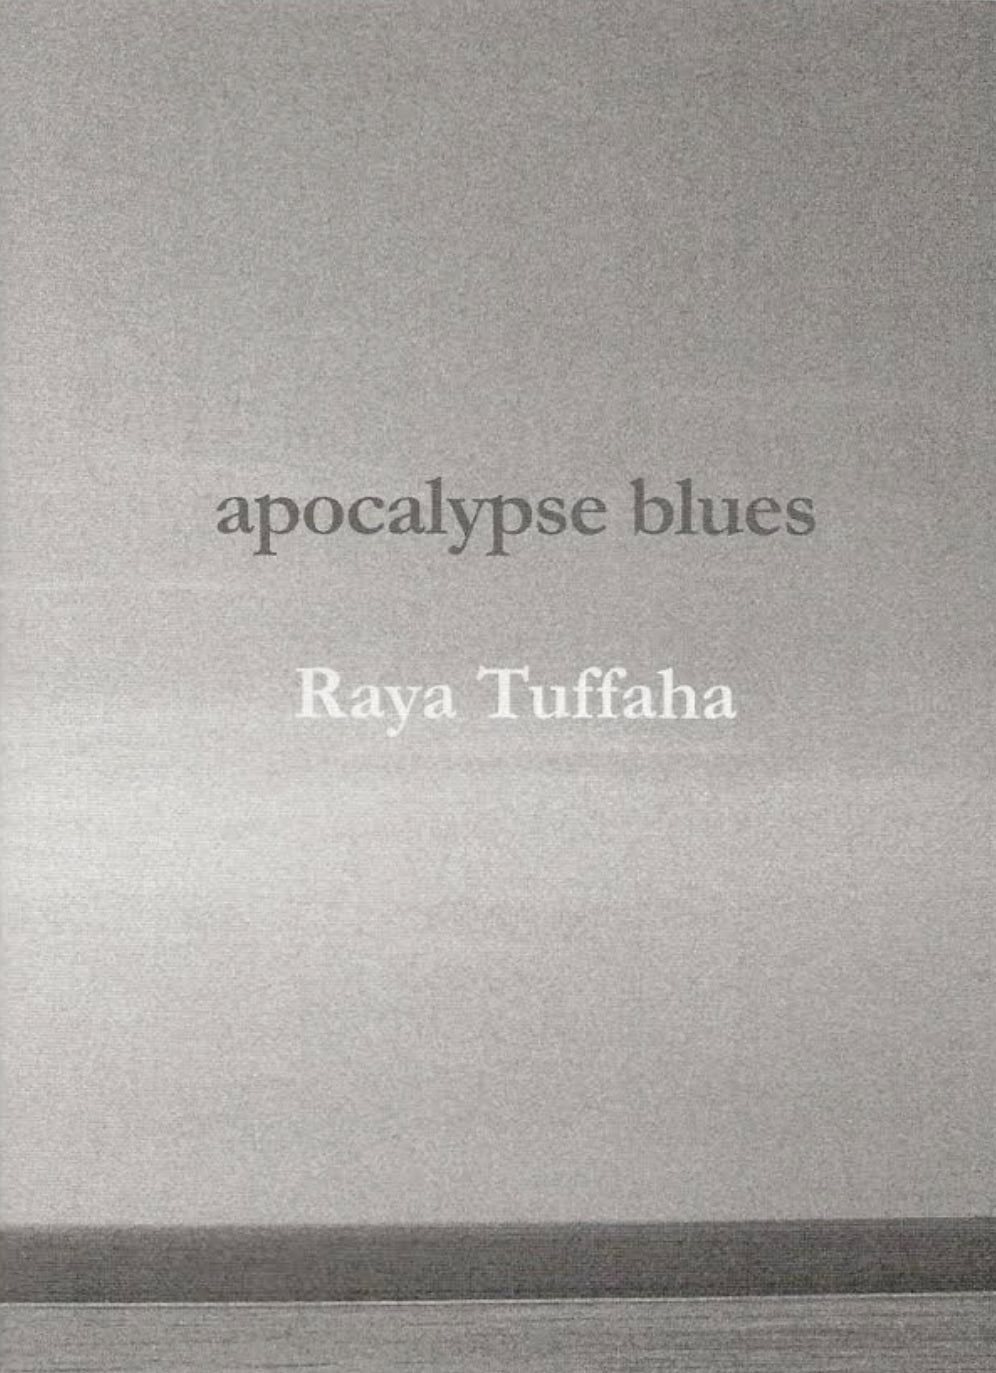 Apocalypse Blues, by Raya Tuffaha